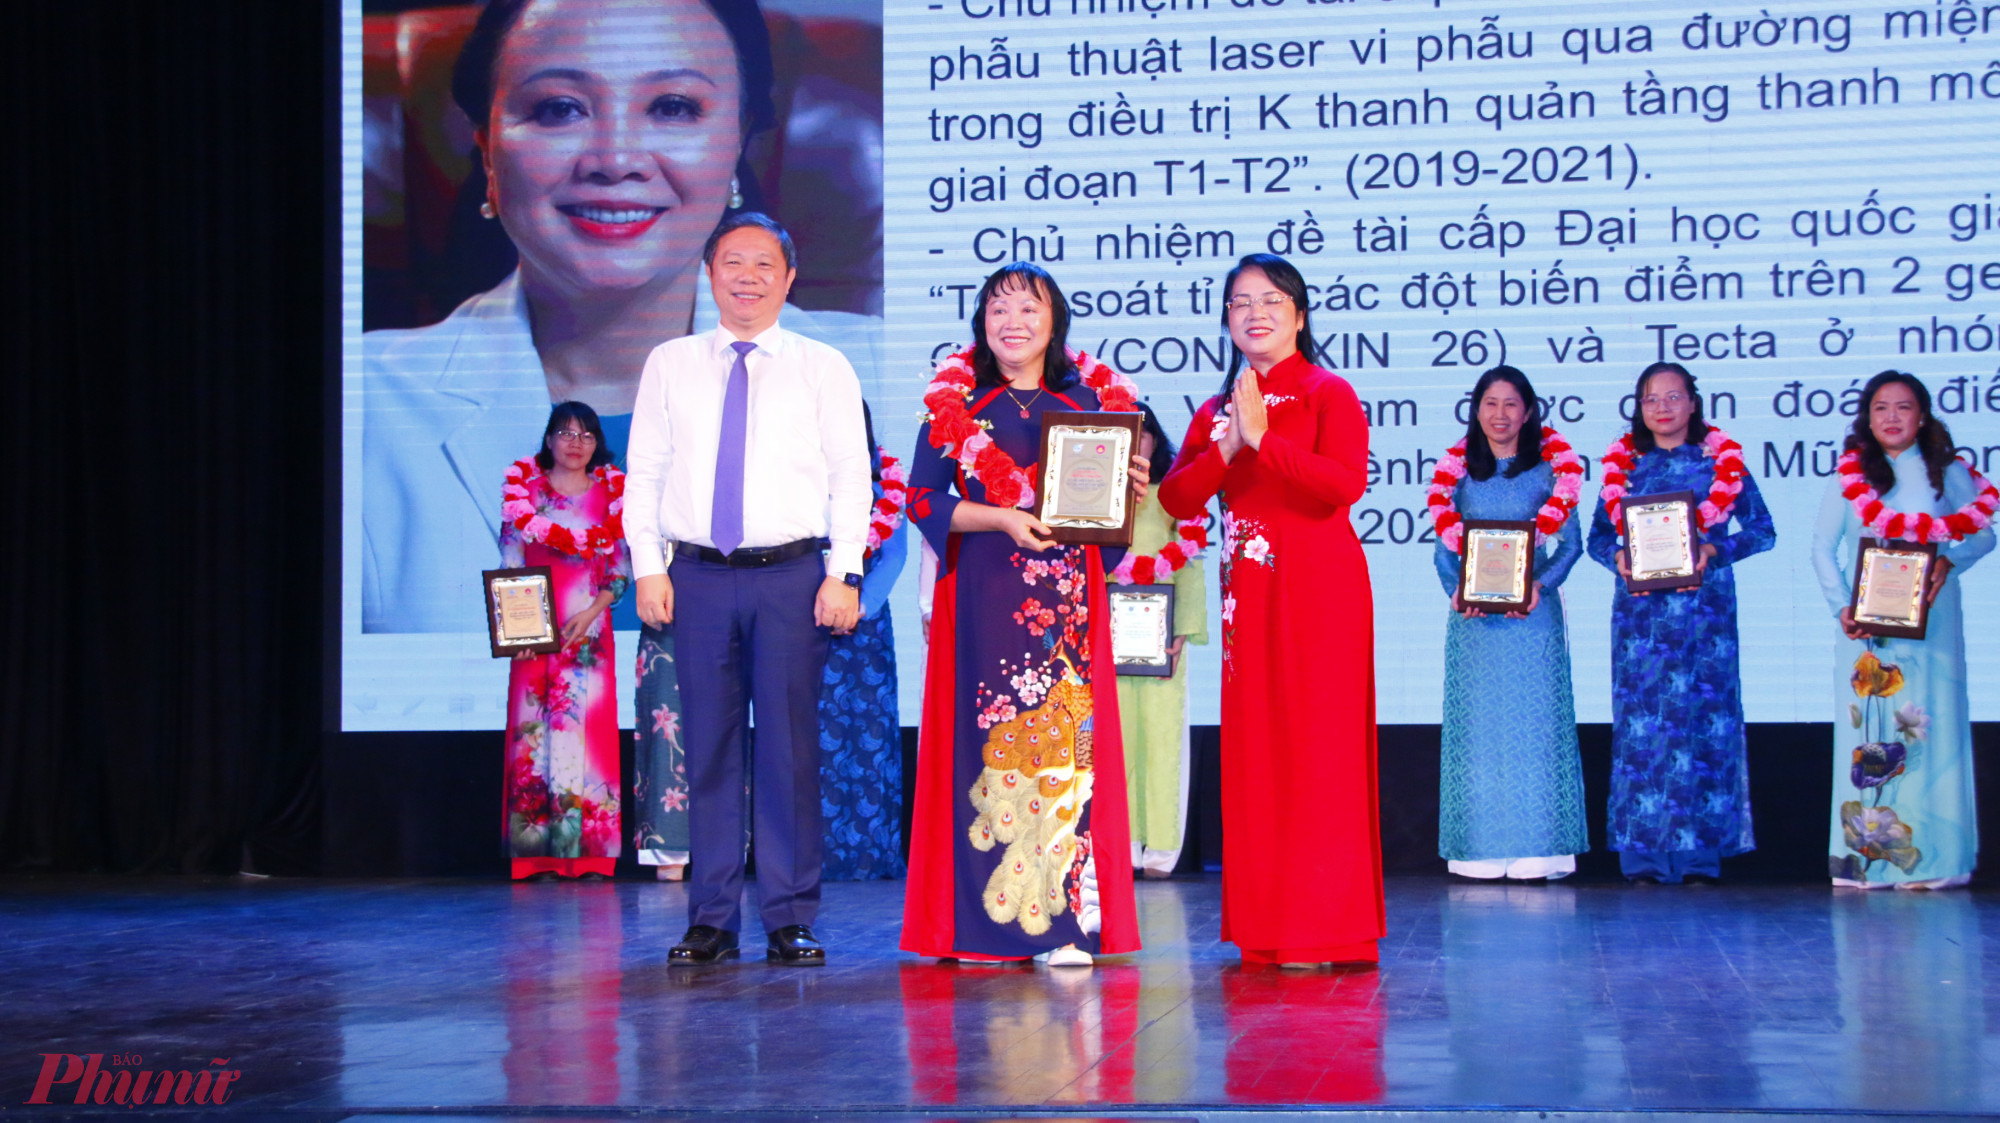 Ông Dương Anh Đức - Phó chủ tịch UBND TPHCM và Trần Kim Yến - Chủ tịch Ủy ban Mặt trận Tổ quốc Việt Nam TPHCM trao hoa và kỷ niệm chương cho Nữ trí thức tiêu biểu TPHCM lần thứ nhất, giai đoạn 2019 - 2024.  